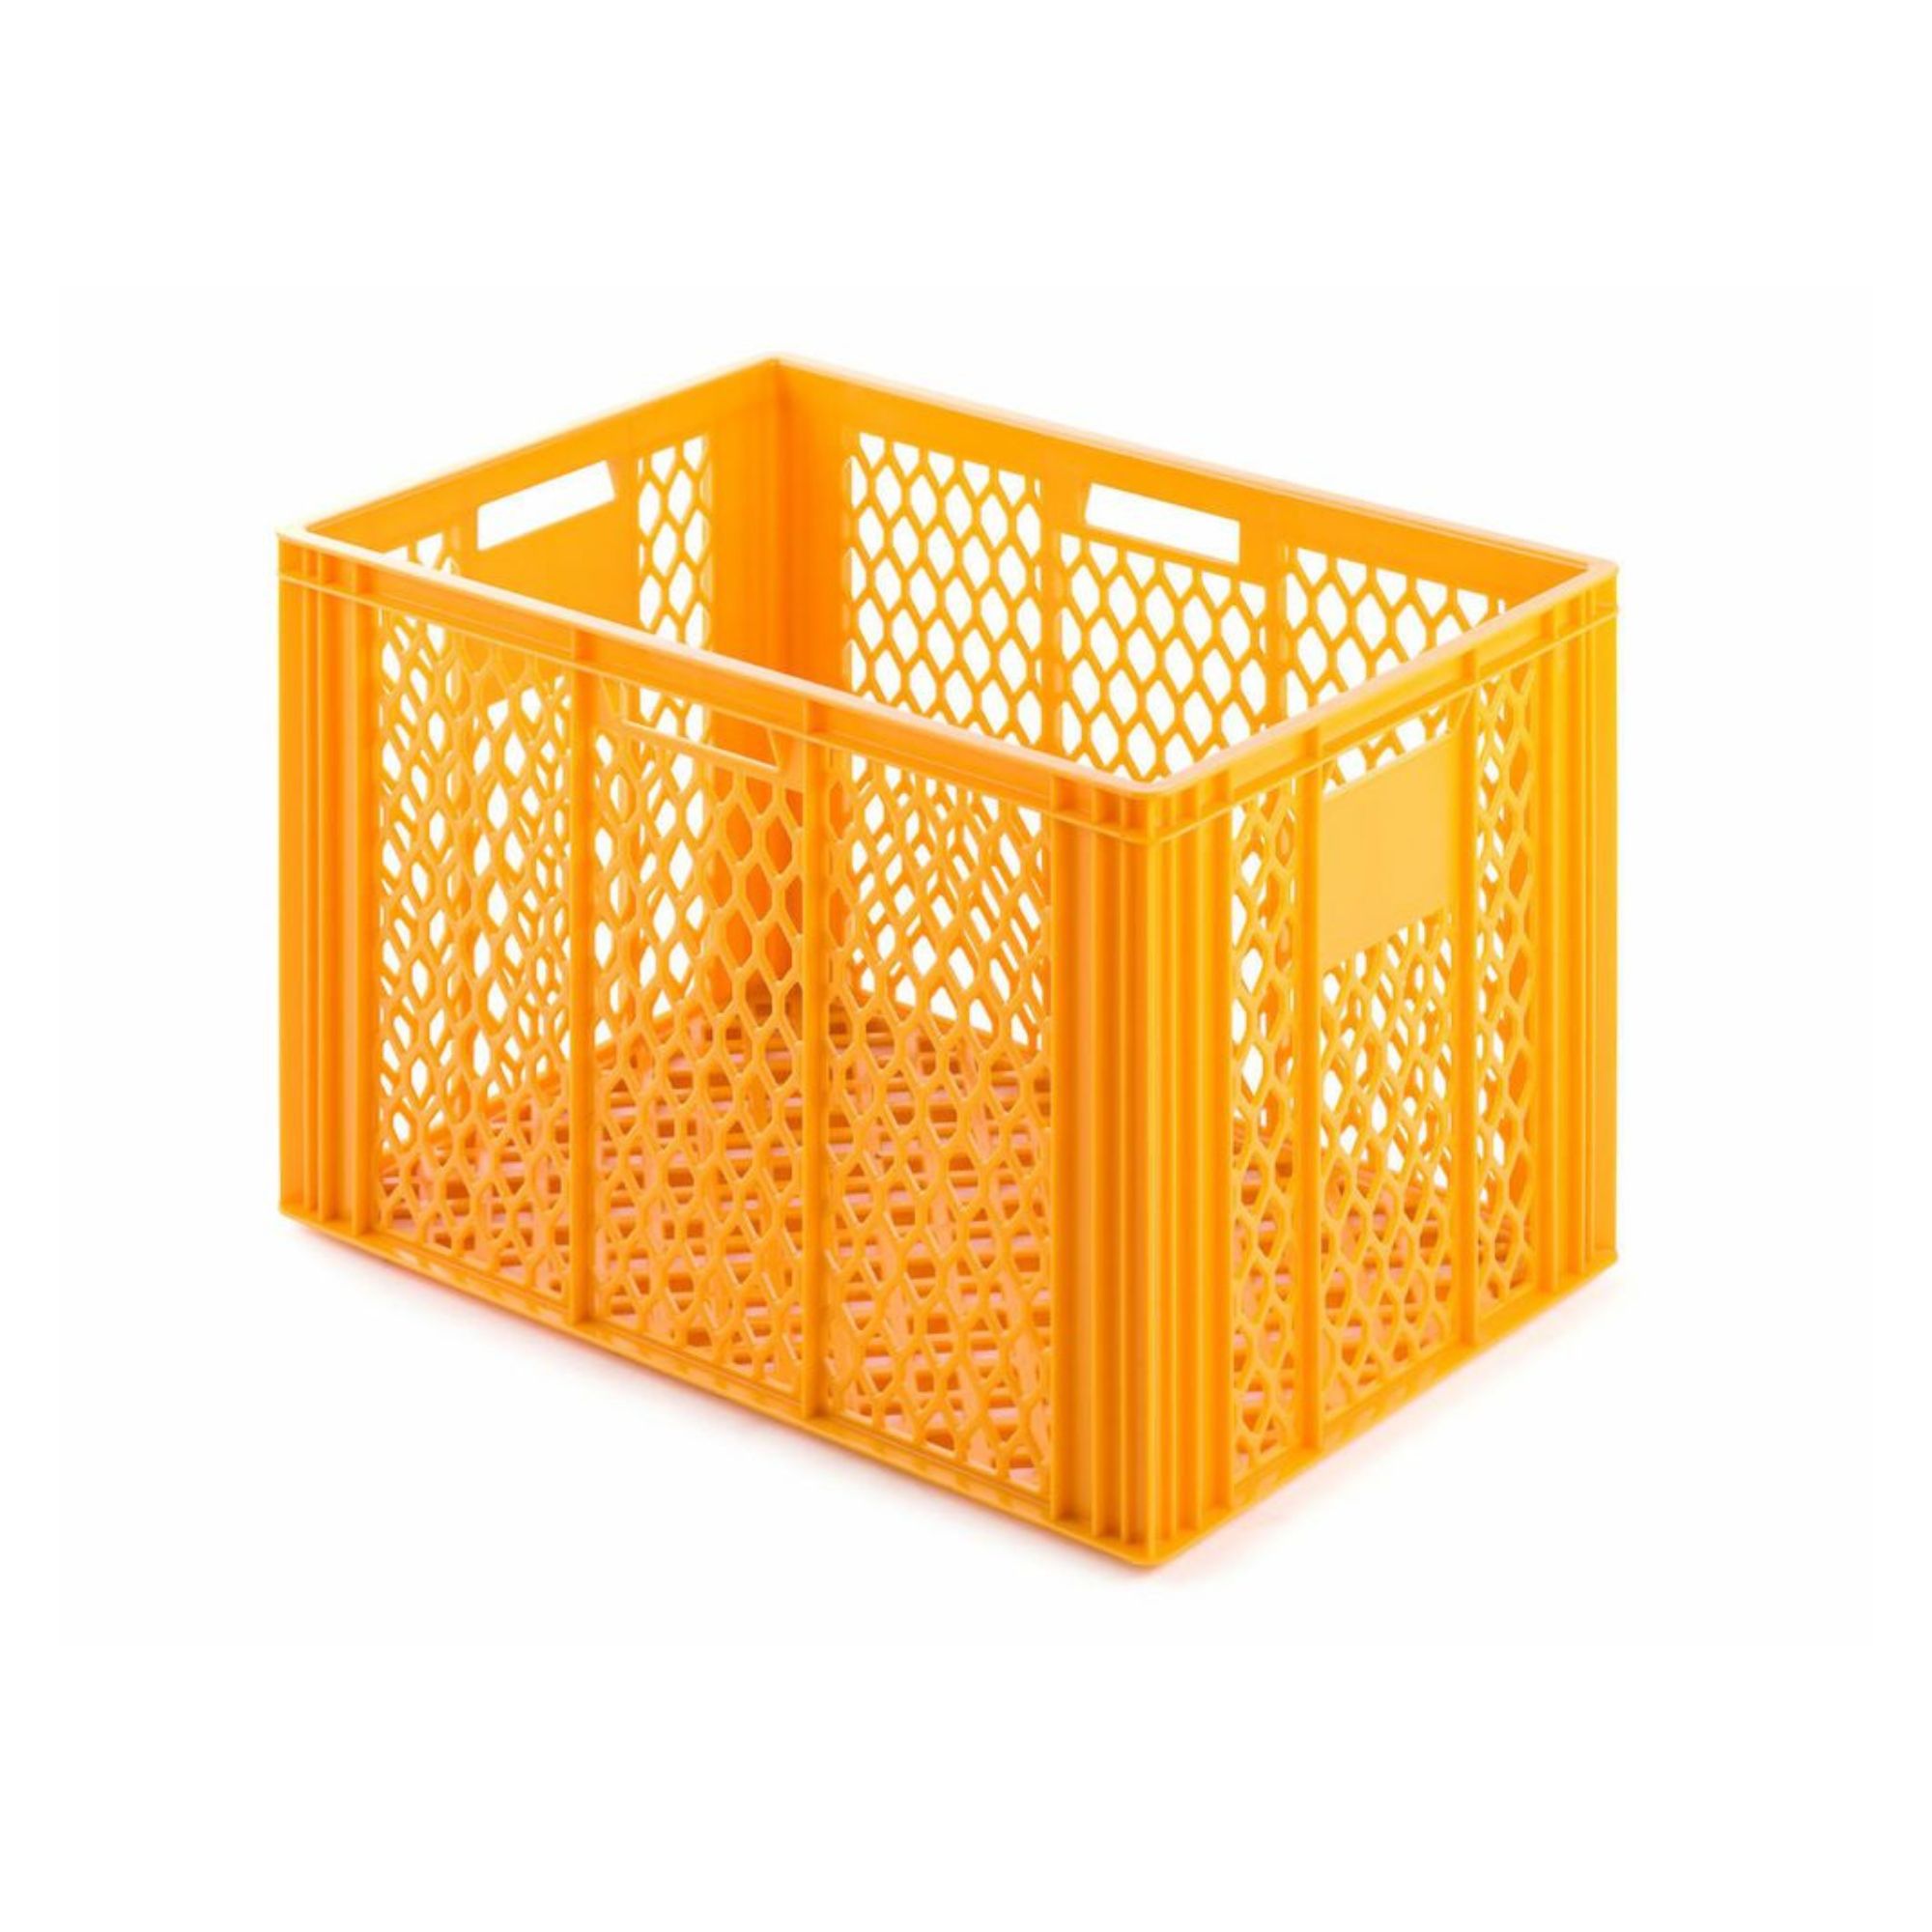 Eurobehälter Bäcker- & Konditorenkasten | HxBxT 42,1x40x60 | 85 Liter | Gelb-Orange | Brötchenkiste, stapelbare Bäckerkiste